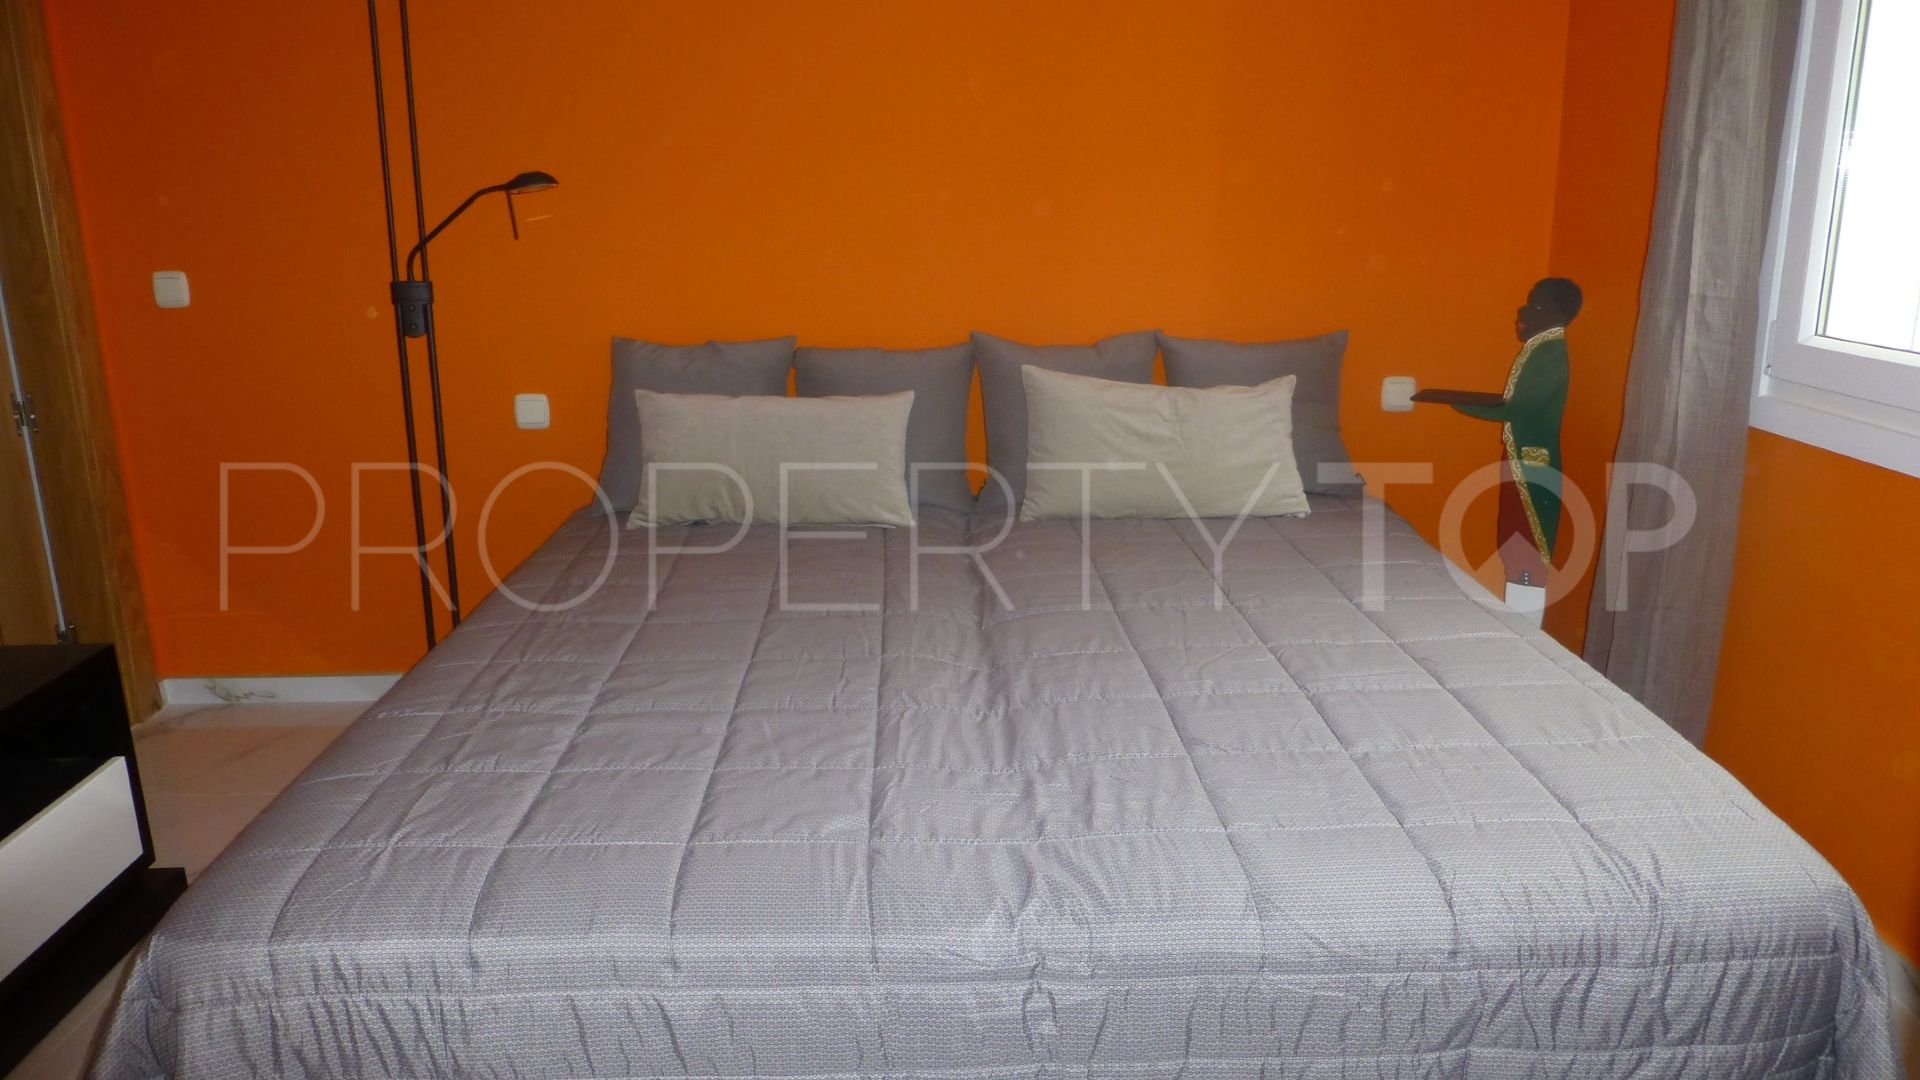 For sale villa in El Rosario with 5 bedrooms